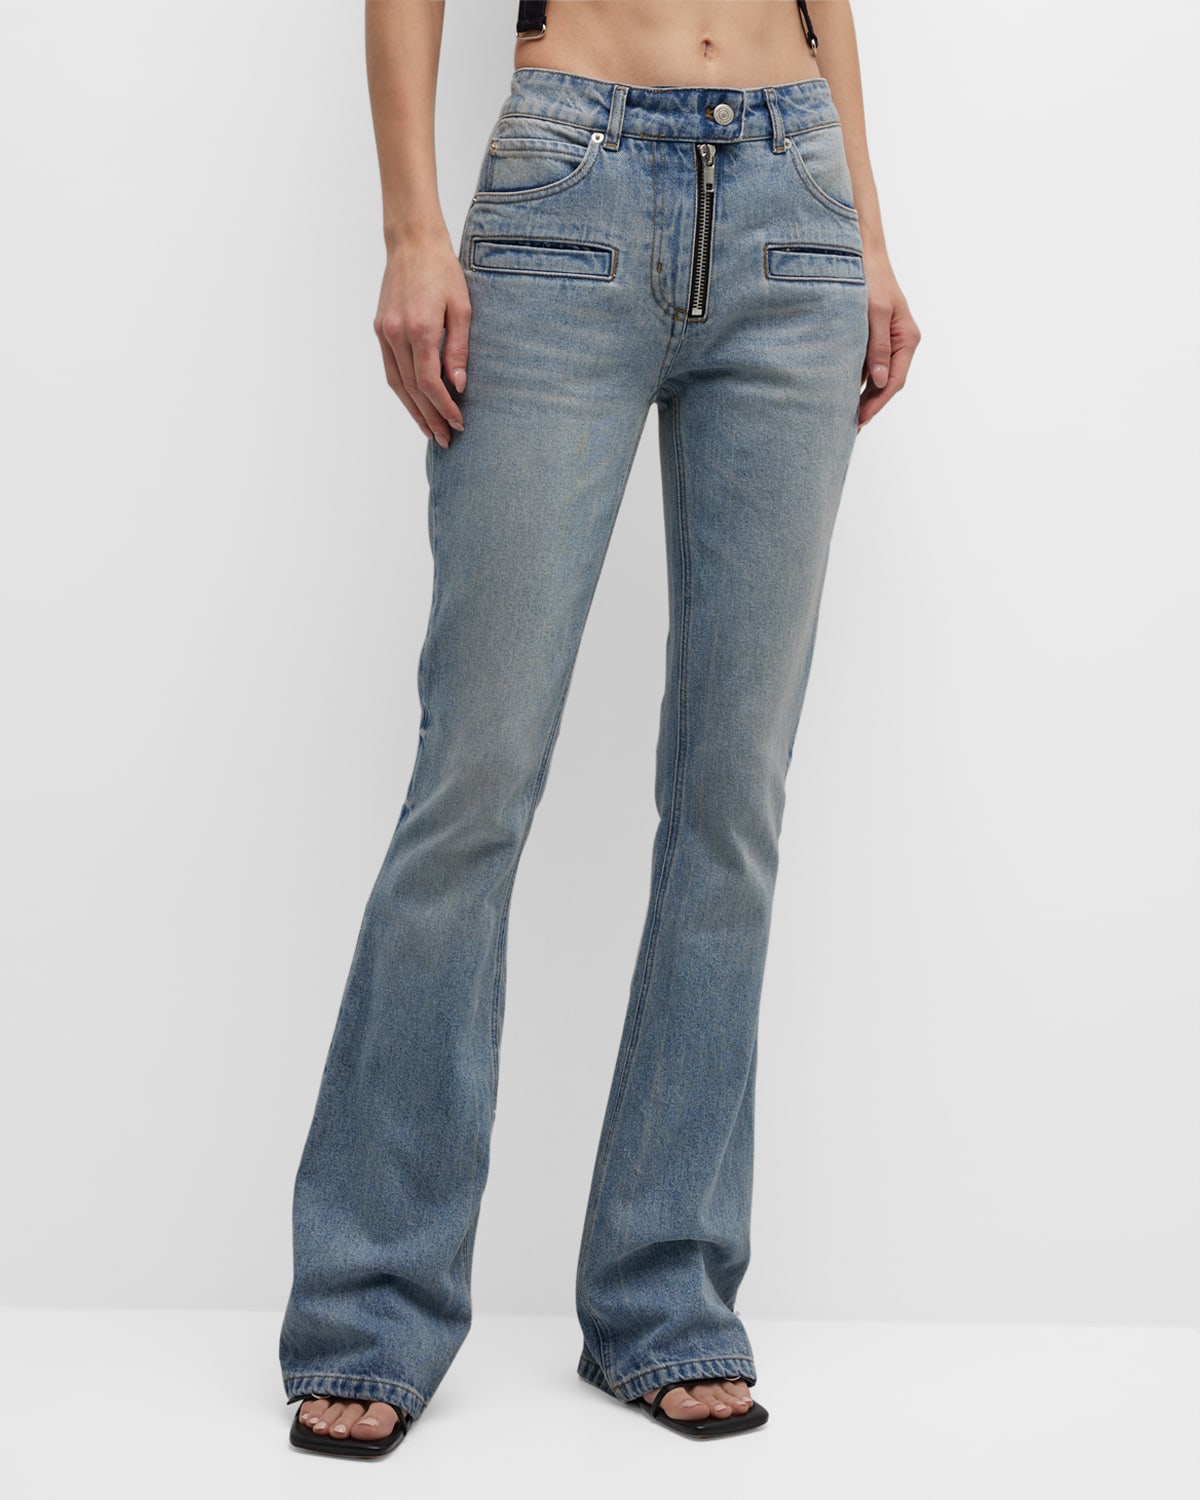 Corolla Blue Denim Bootcut-Leg Jeans